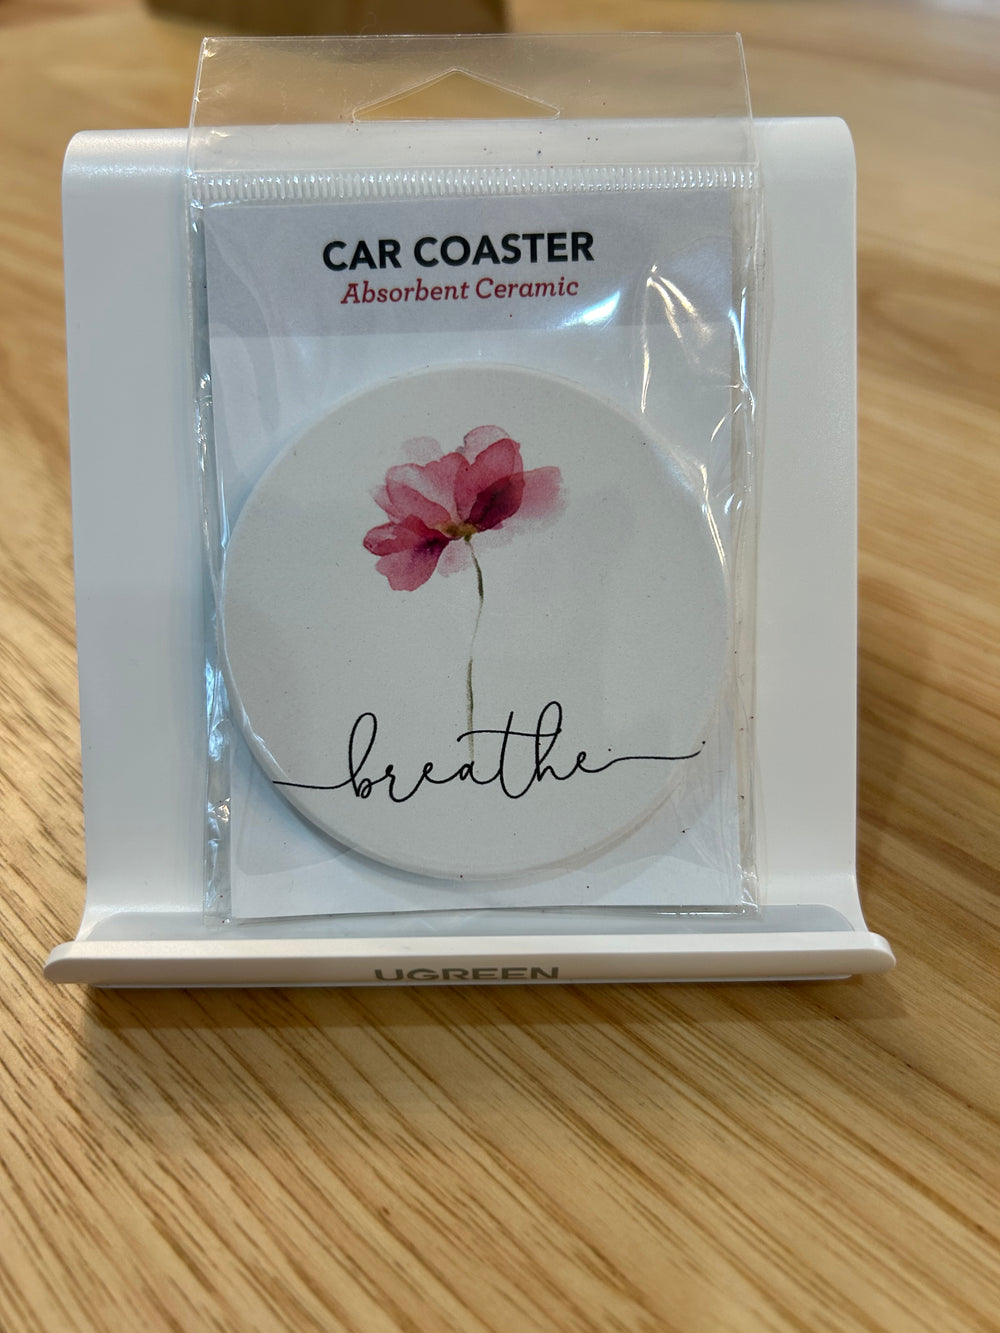 Car Coaster - The Teal Antler Boutique